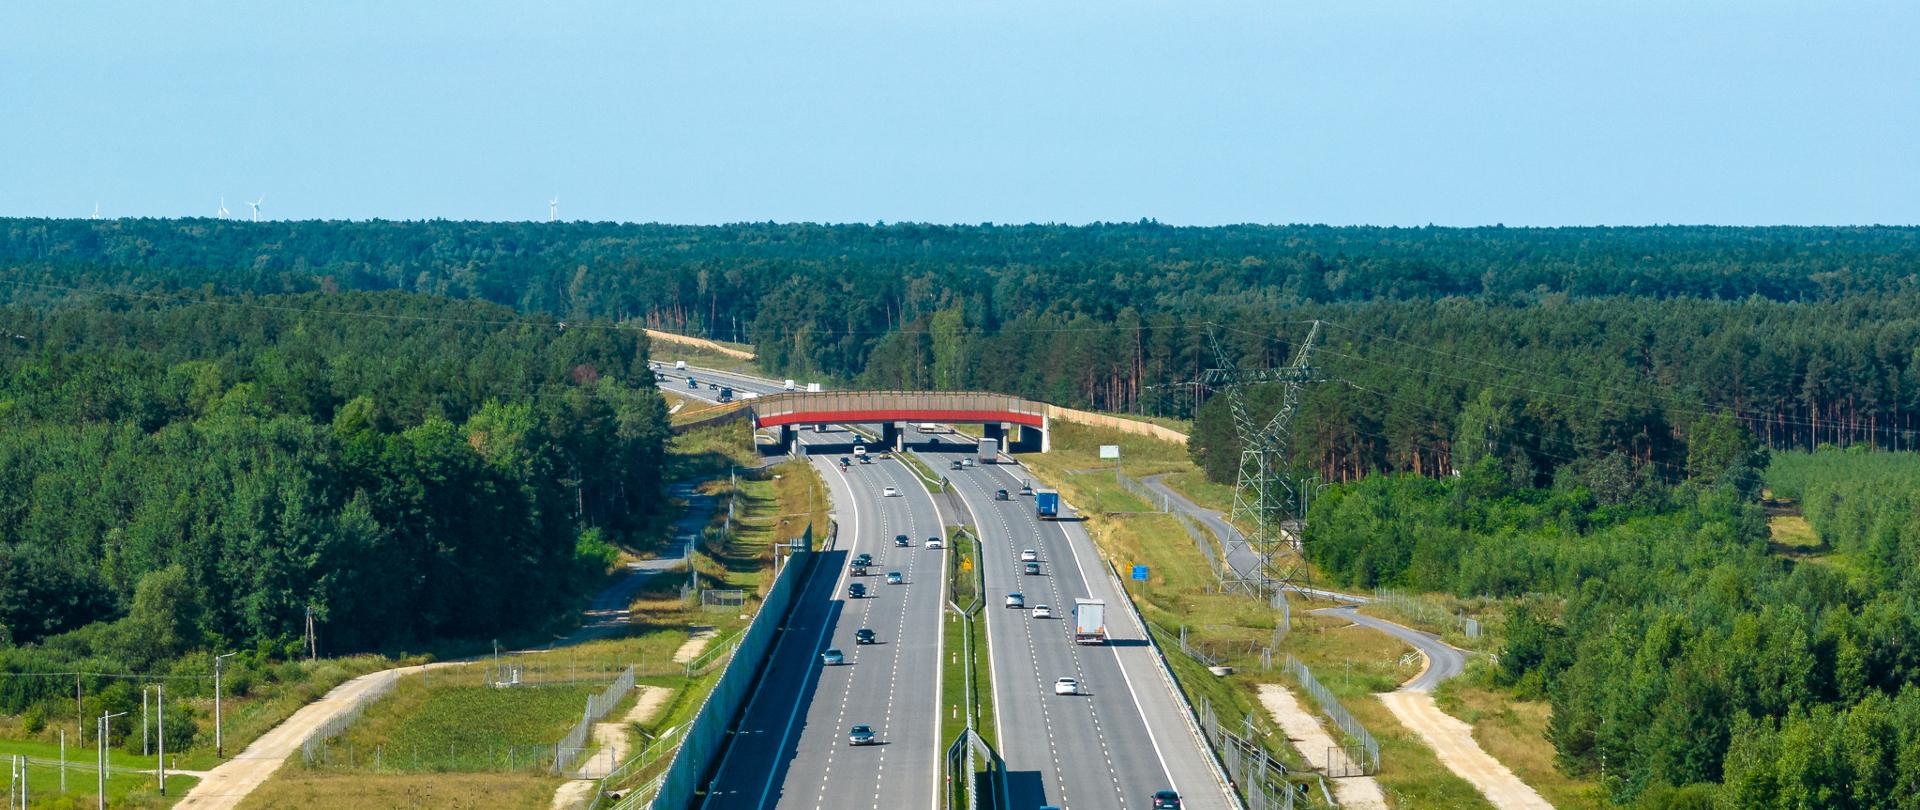 Ruch pojazdów na autostradzie A1 w okolicach Radomska. Trzy pasy ruchu w każdą stronę. Środkowej części zdjęcia nad autostradą znajduje się przejście dla zwierząt. Po obu stronach drogi rośnie gęsty las.